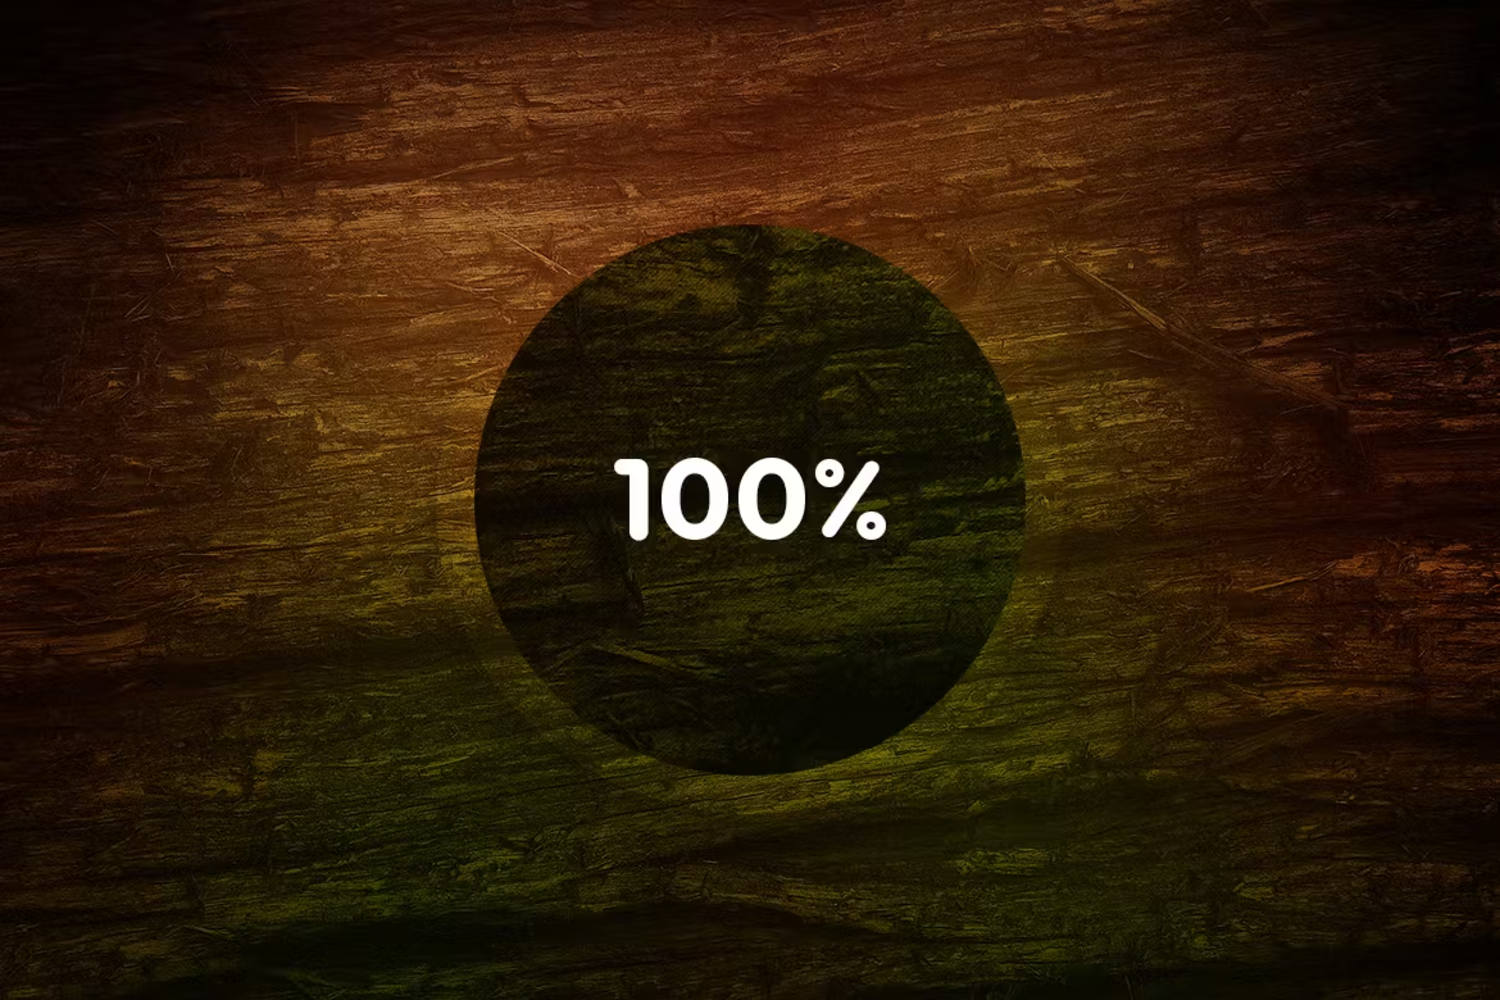 6014 高清木质纹理摄影背景设计素材-Wood Backgrounds